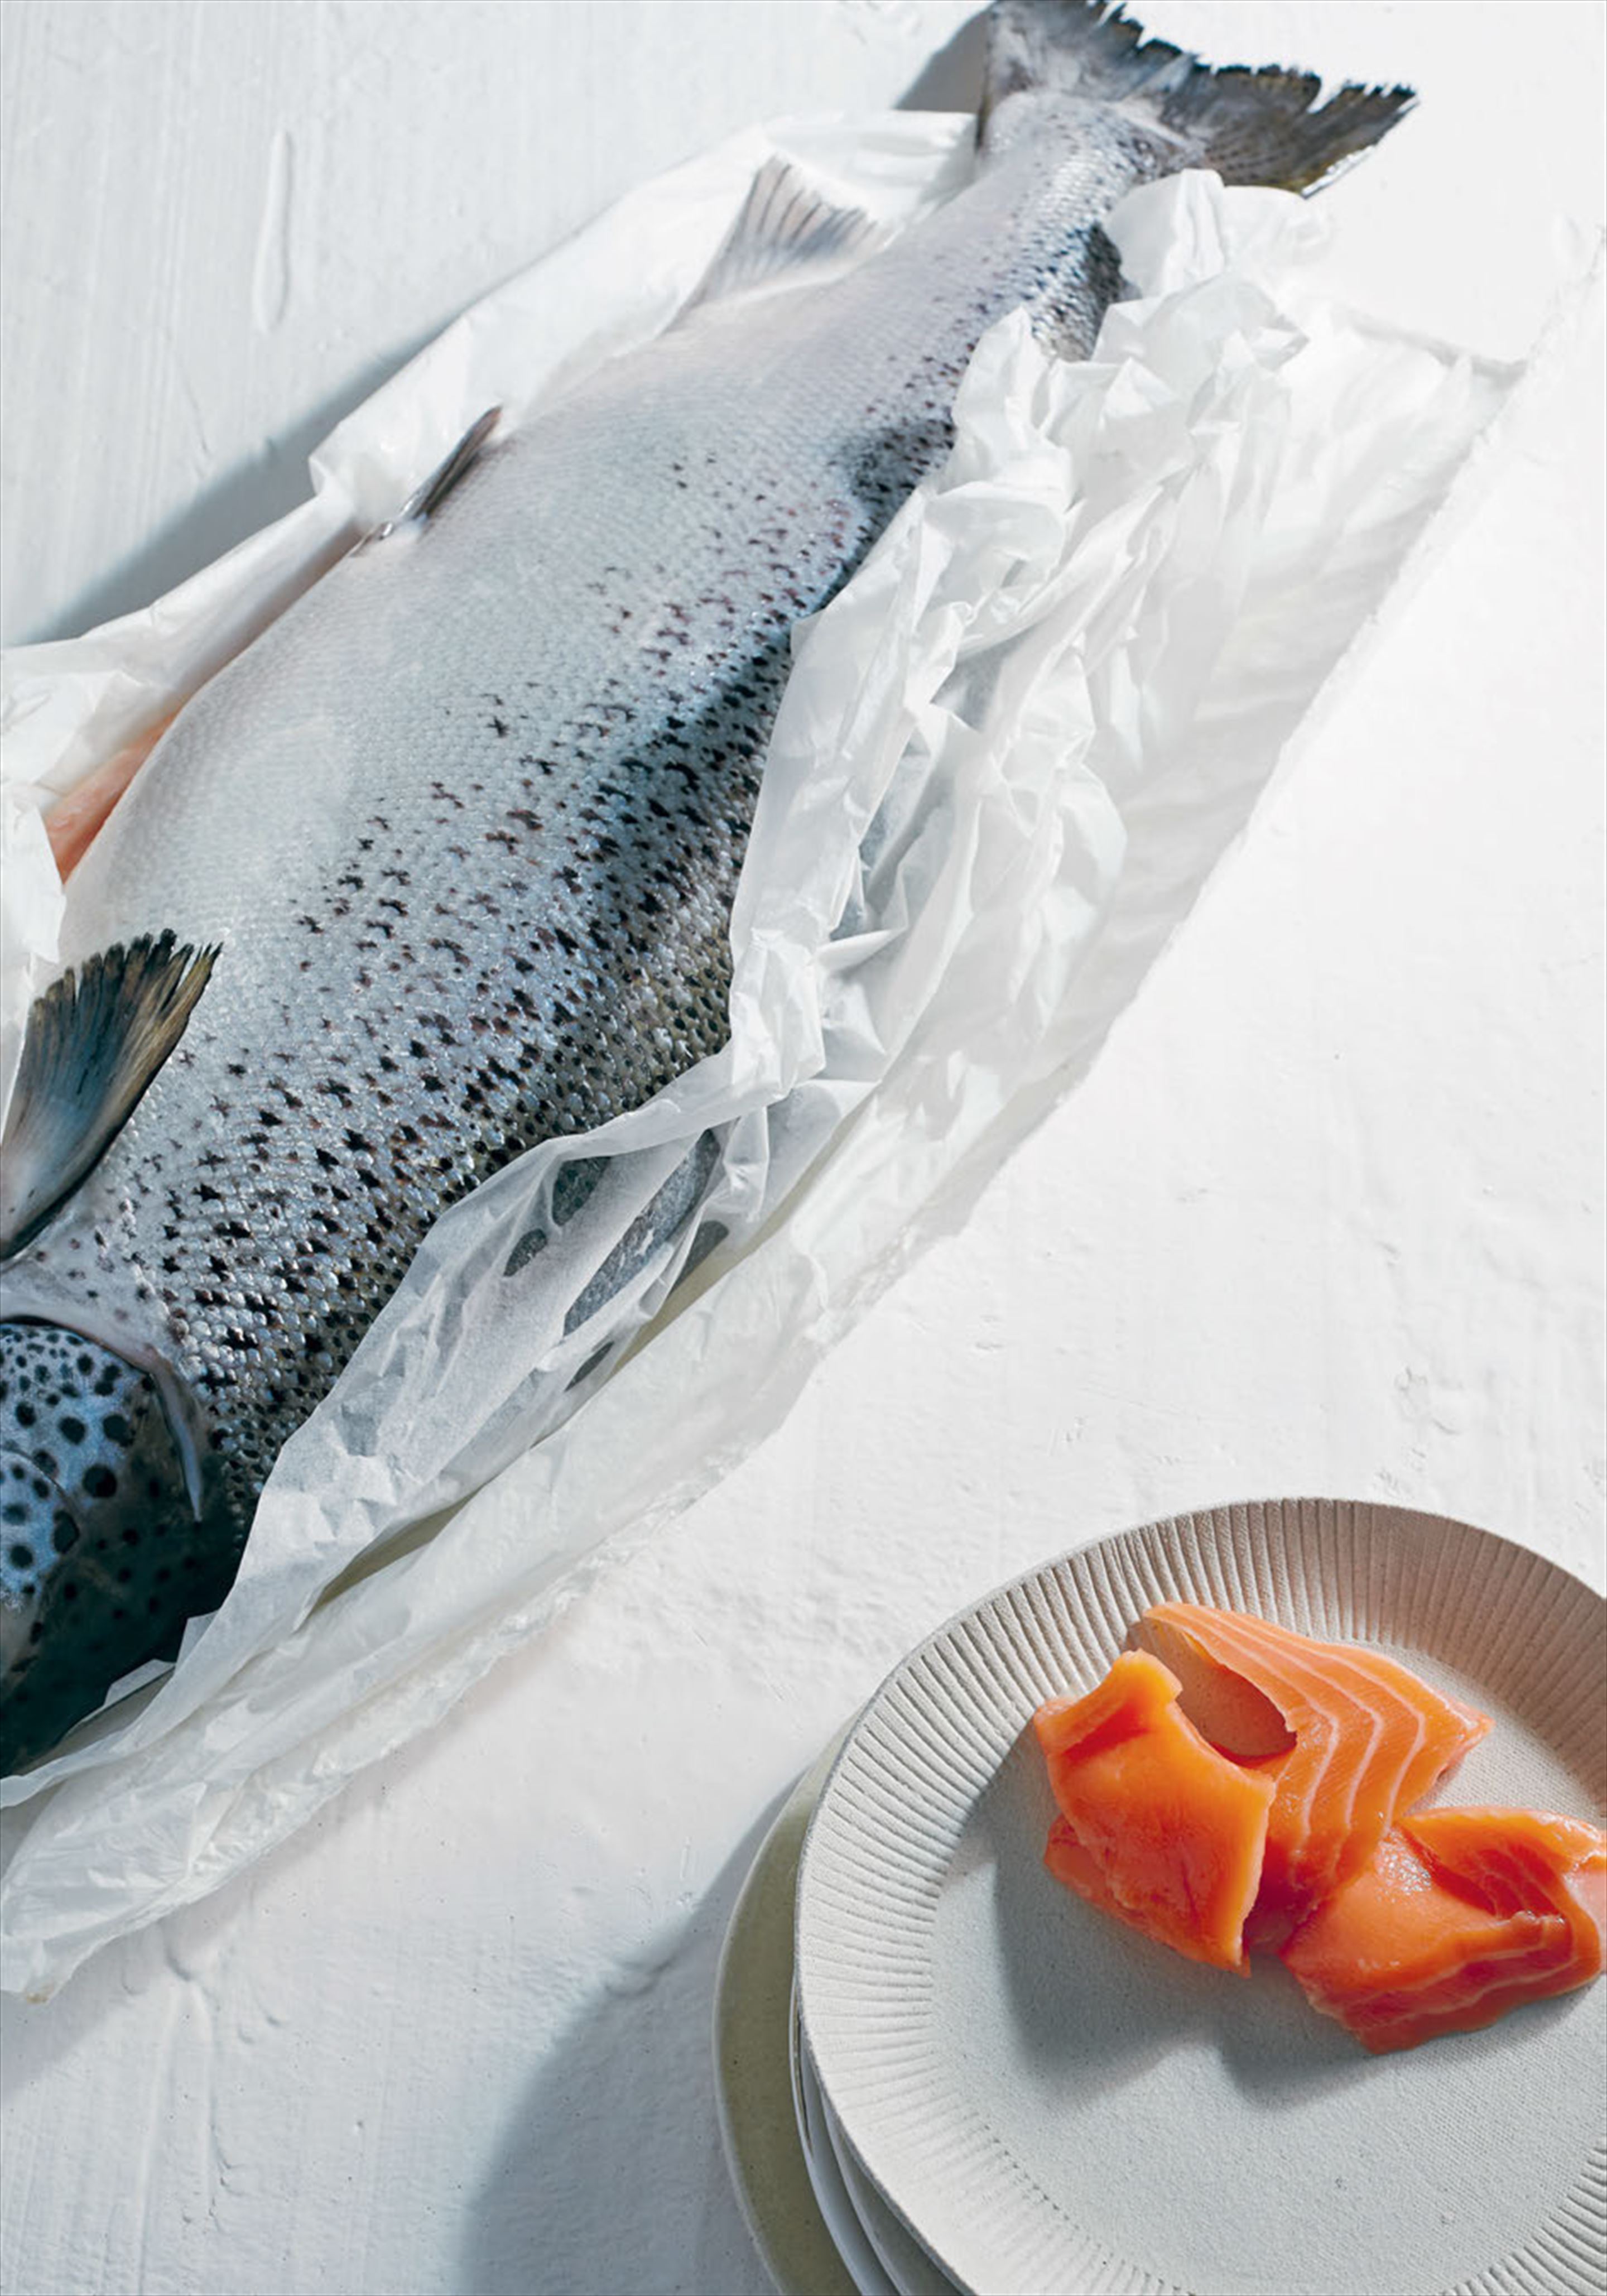 Confit salmon